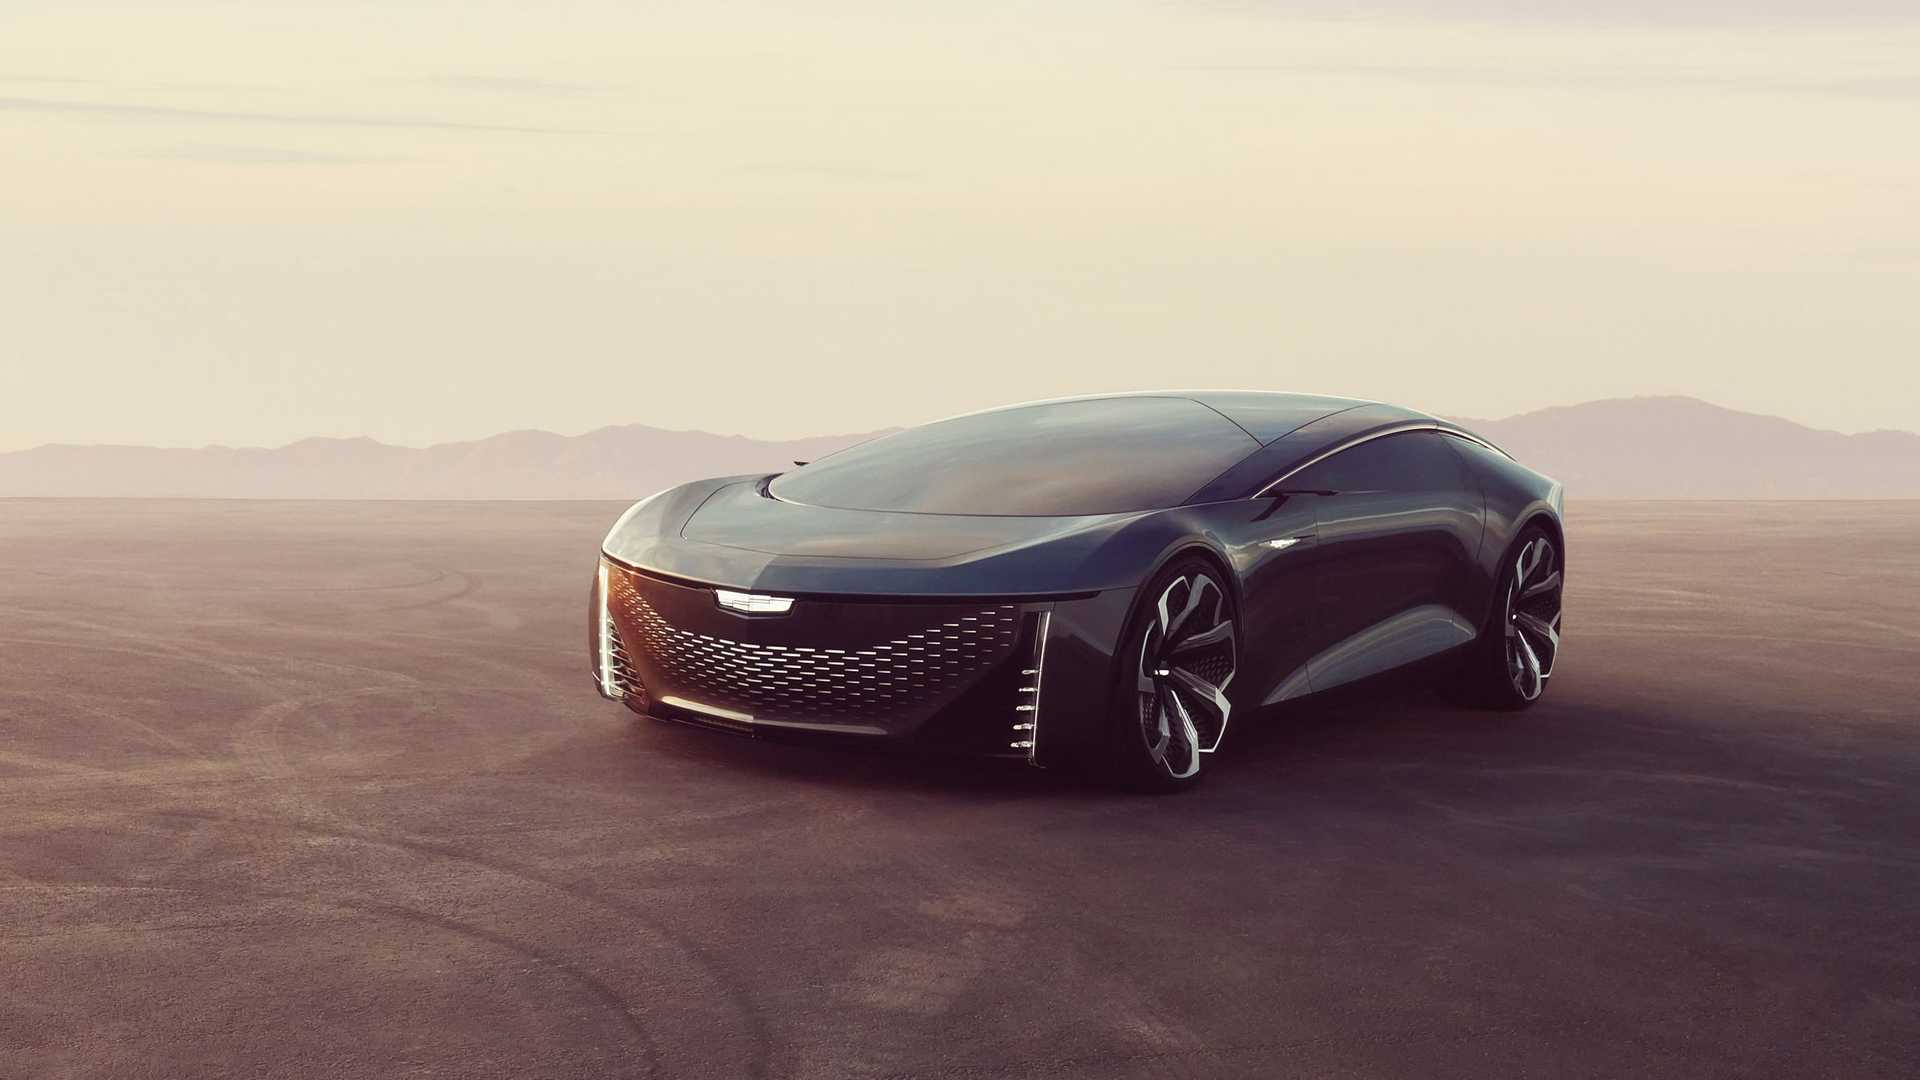 completely autonomous vehicle concept